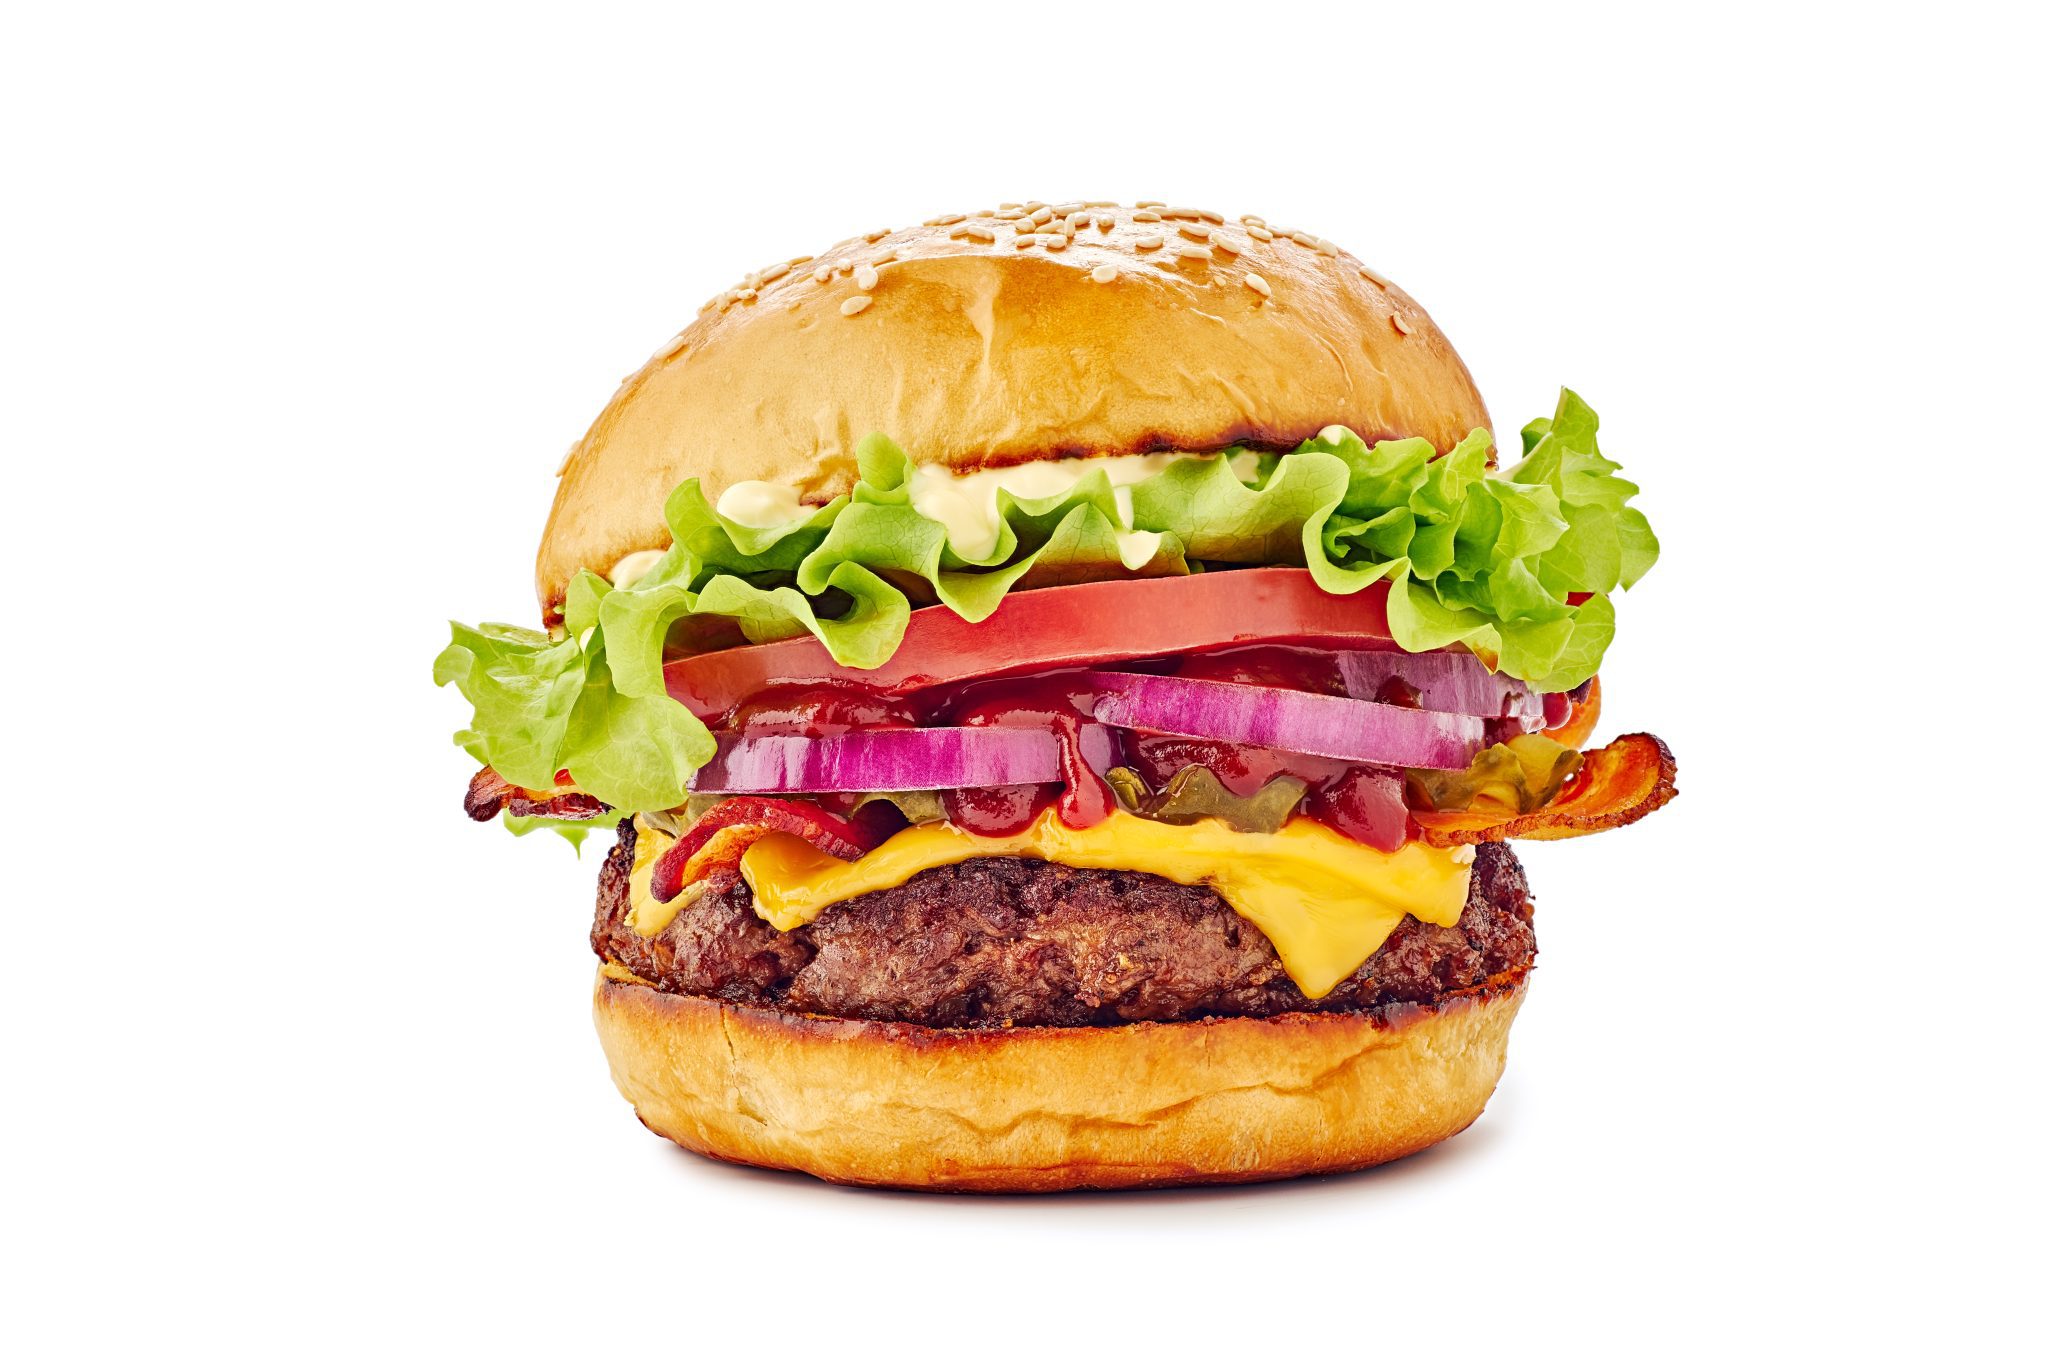 Juicy hamburger on white background